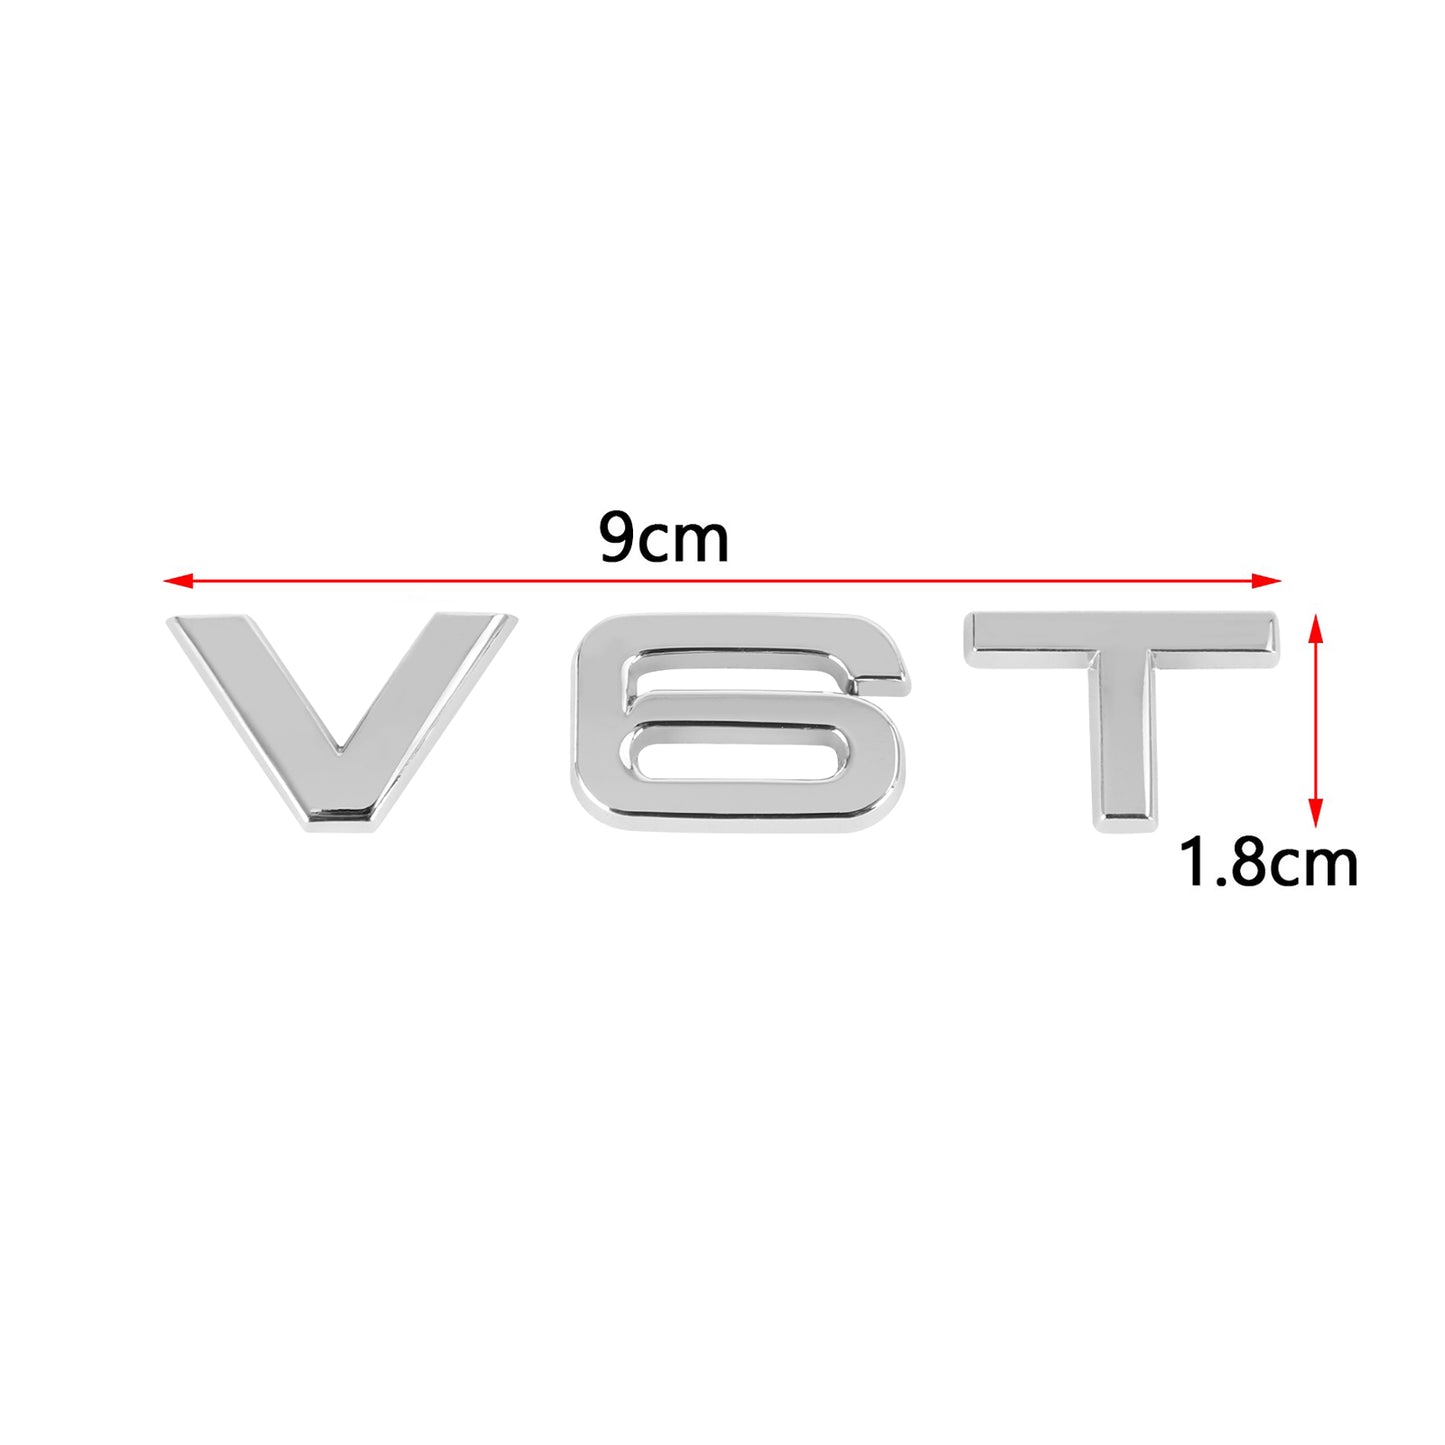 V6T Emblem Badge Fit For AUDI A1 A3 A4 A5 A6 A7 Q3 Q5 Q7 S6 S7 S8 S4 SQ5 Chrome